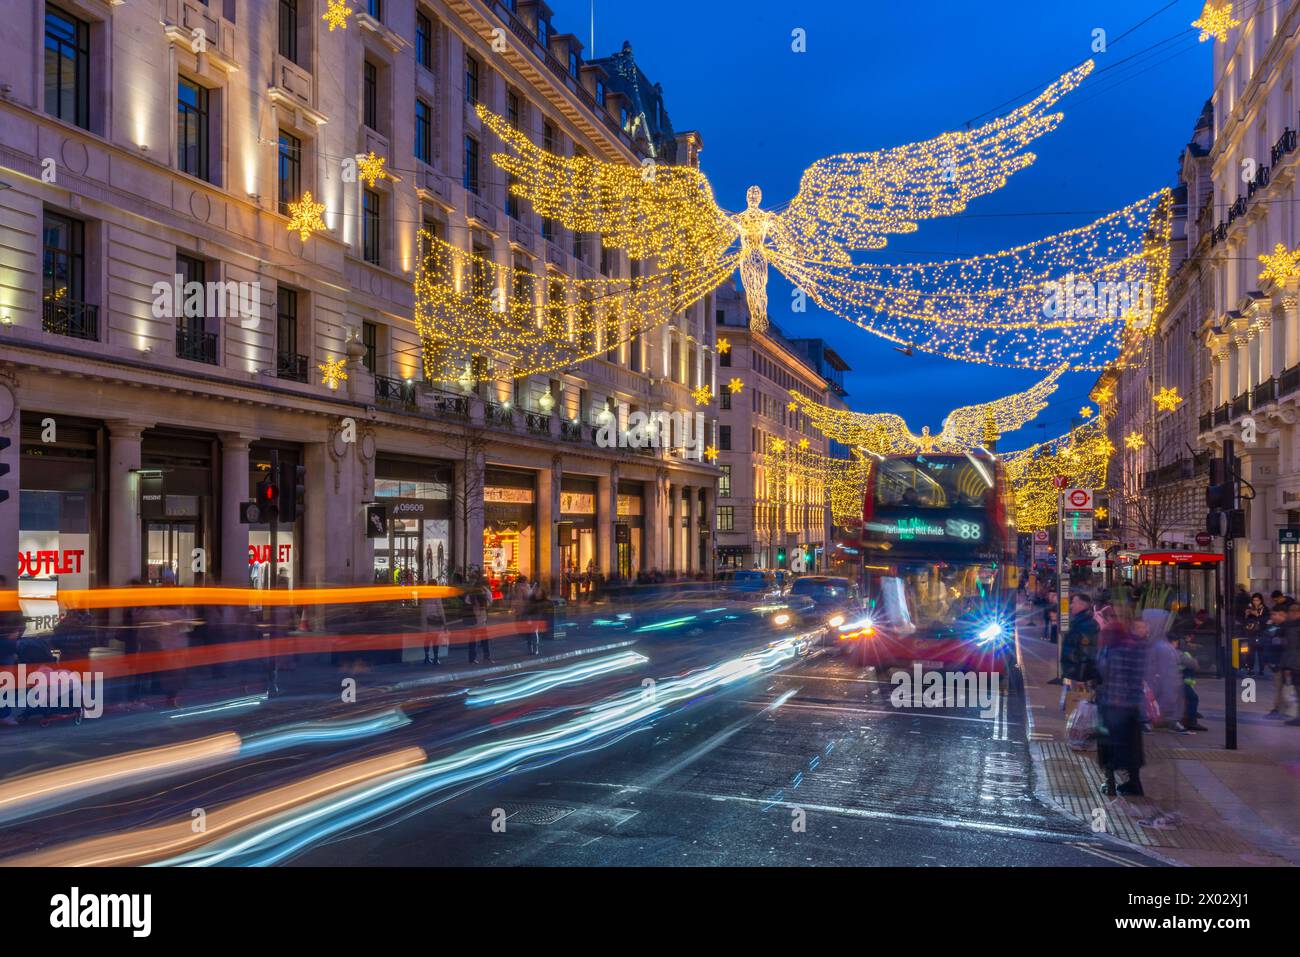 Vue des boutiques et des lumières de Regent Street à Noël, Westminster, Londres, Angleterre, Royaume-Uni, Europe Banque D'Images